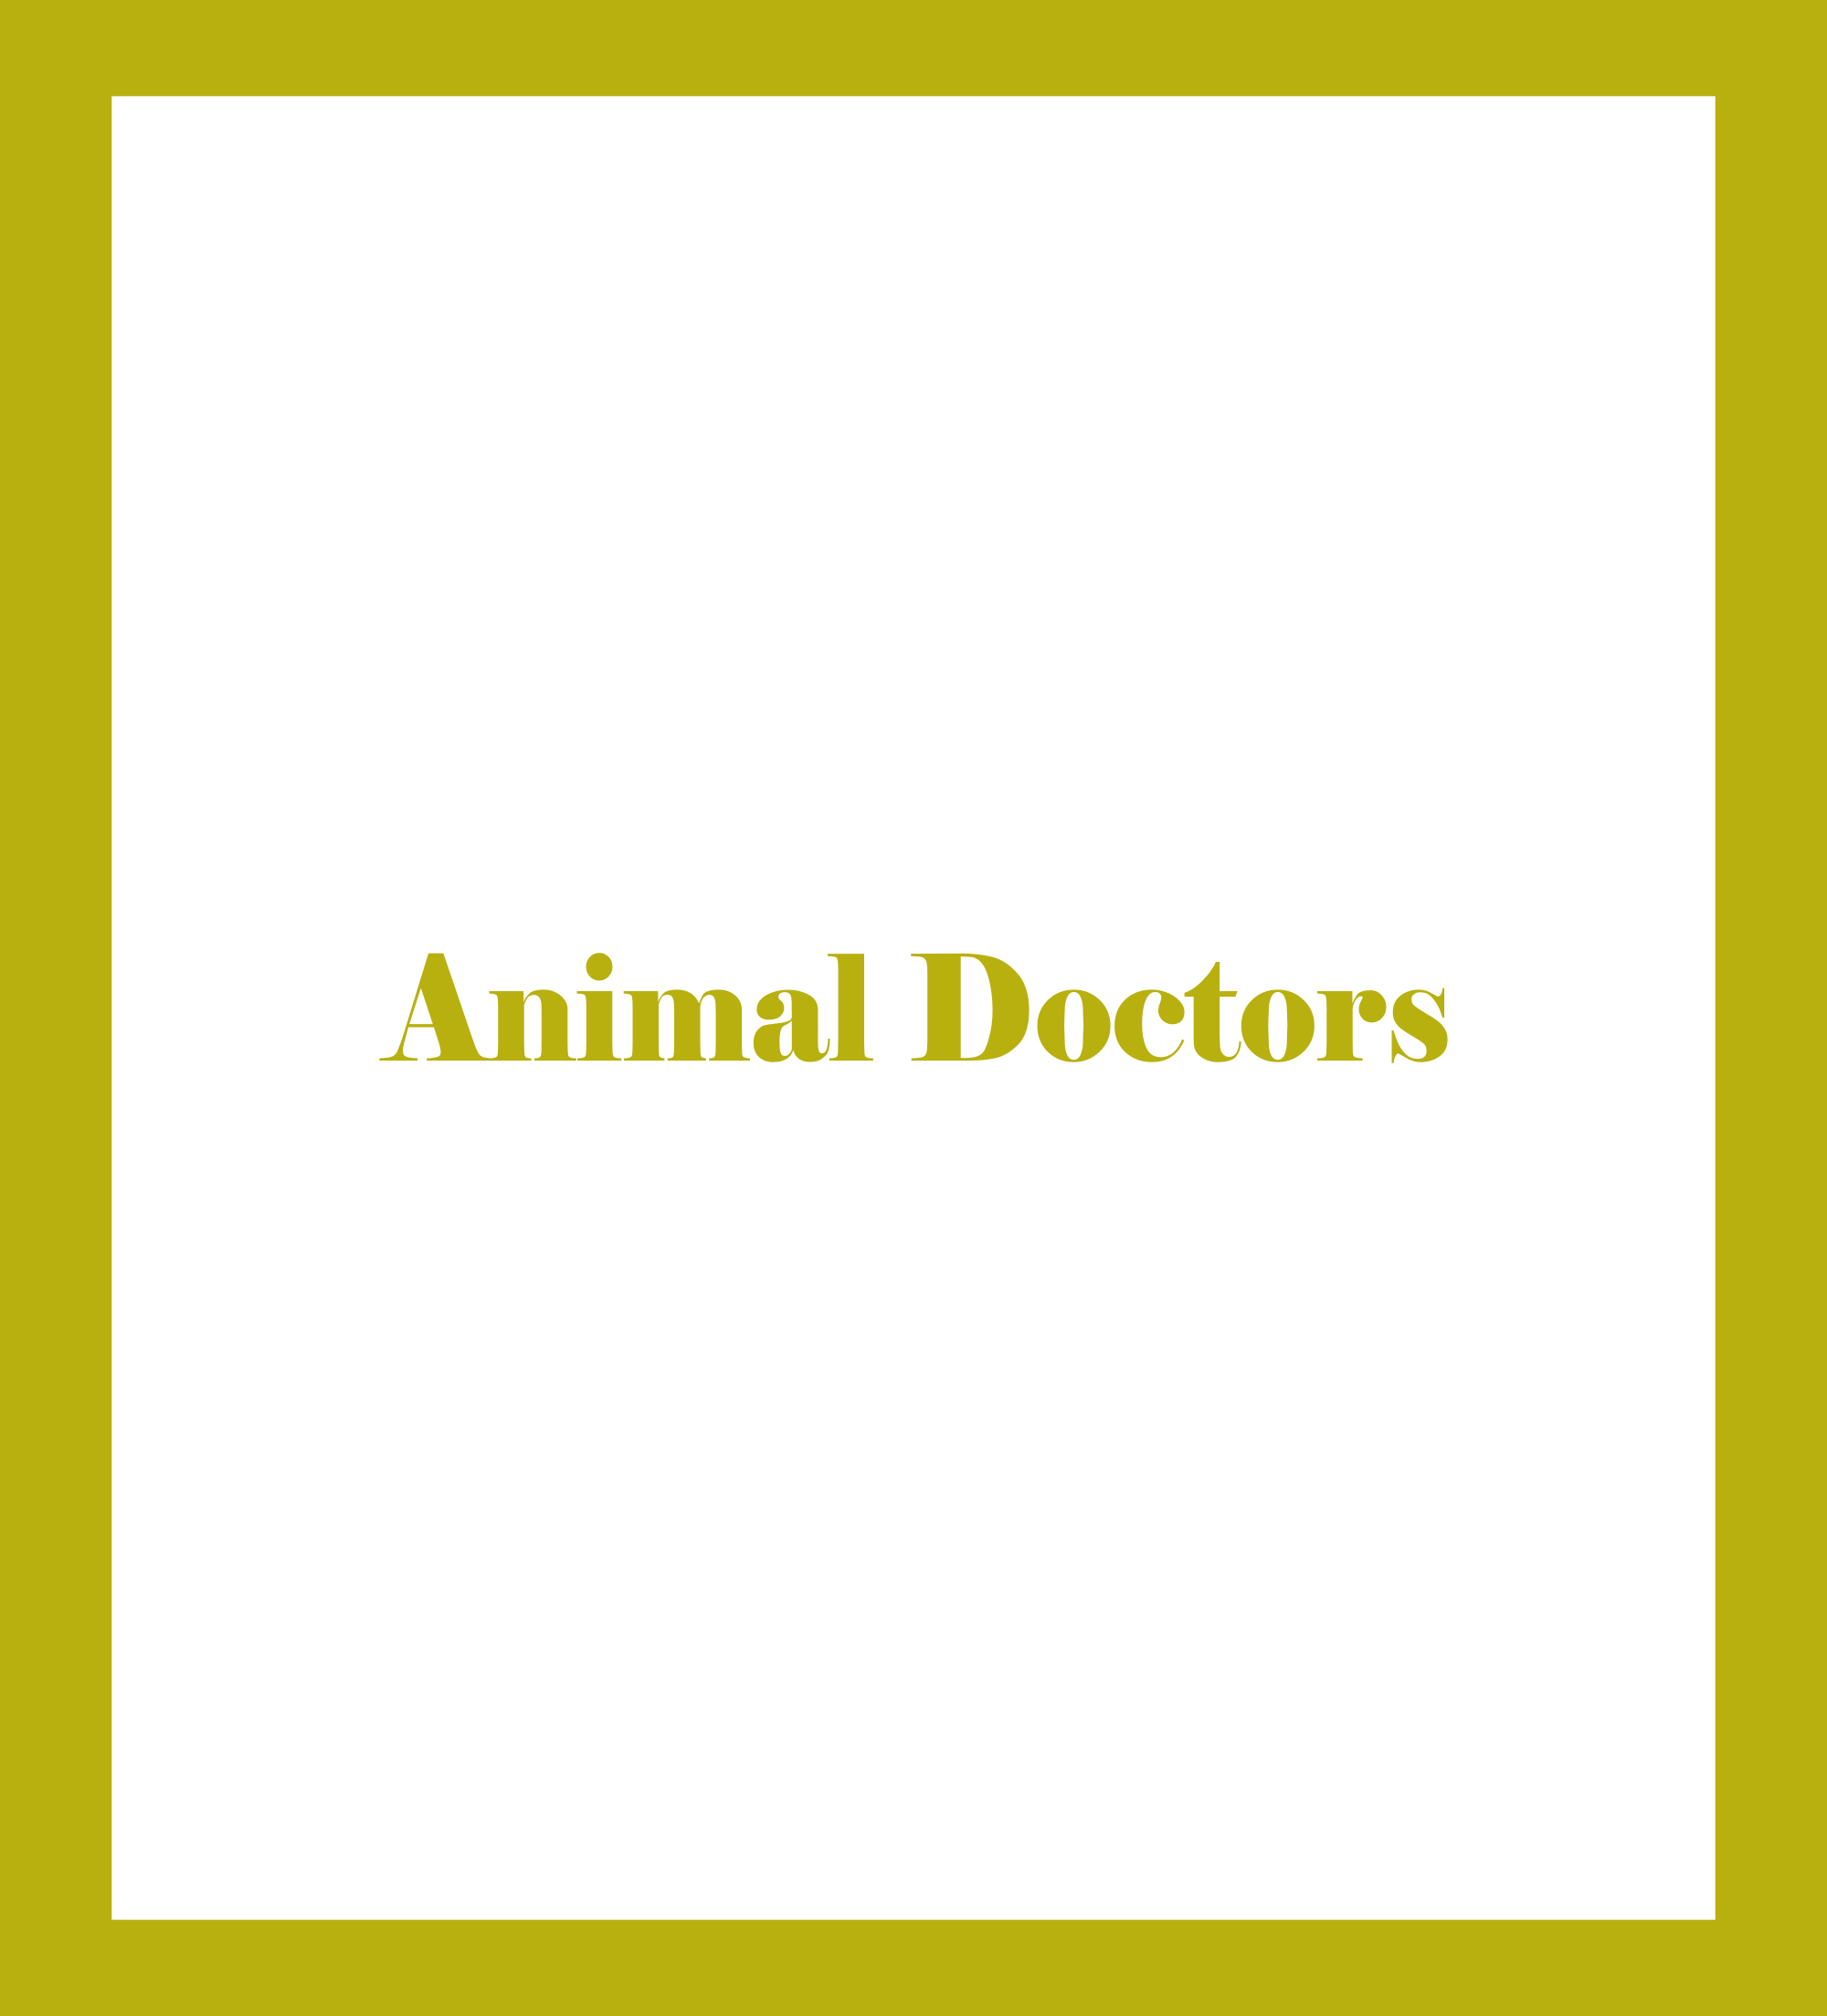 Caratula de Animal Doctors (Medicina animal) 